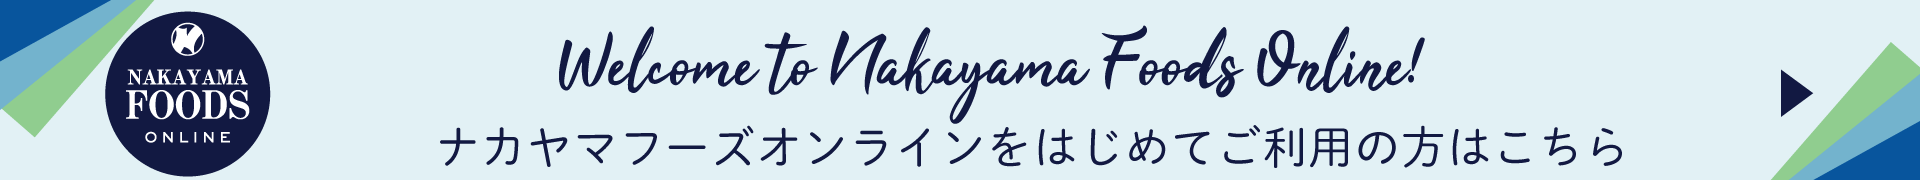 ナカヤマフーズ 食品・冷凍食品・業務用食品の通販 ご利用ガイド|ナカヤマフーズオンライン